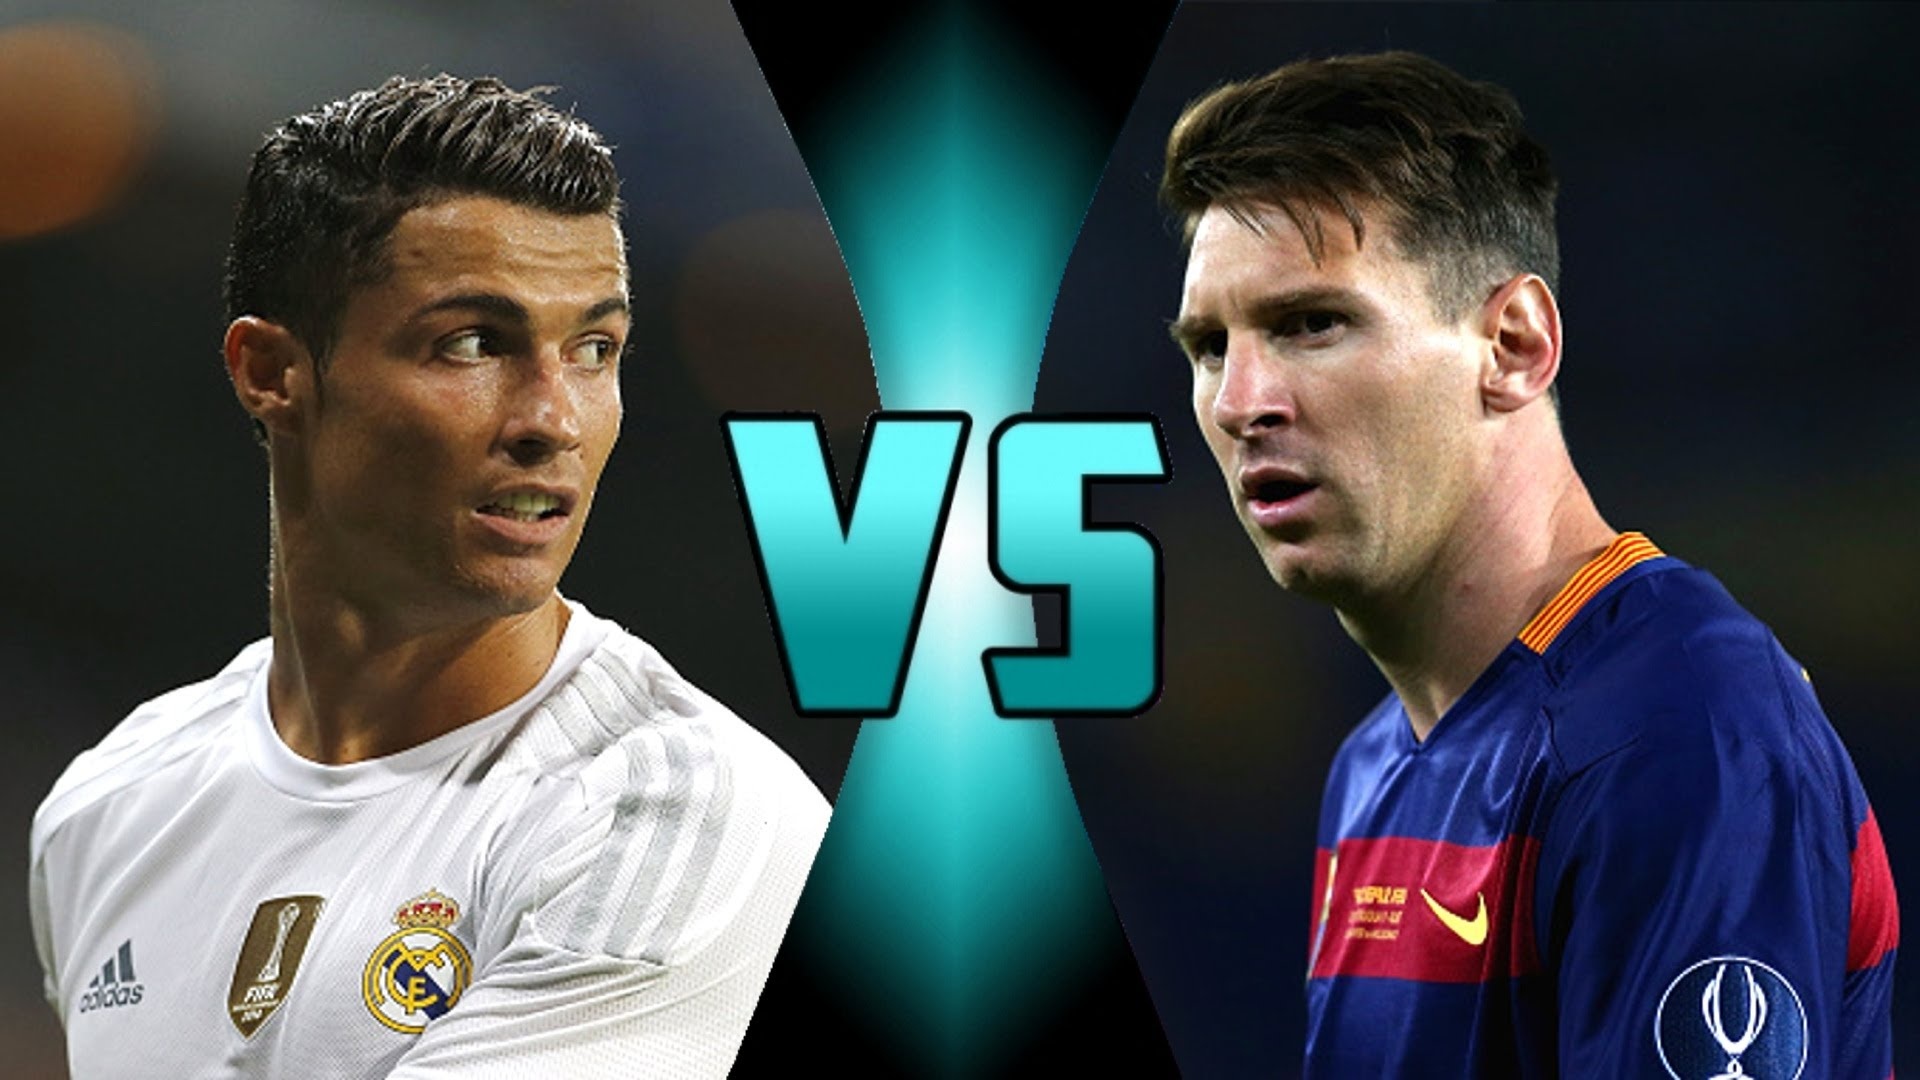 wp image 450953 - [VIDEO] EL CLÁSICO-Messi VS Ronaldo: GOLES